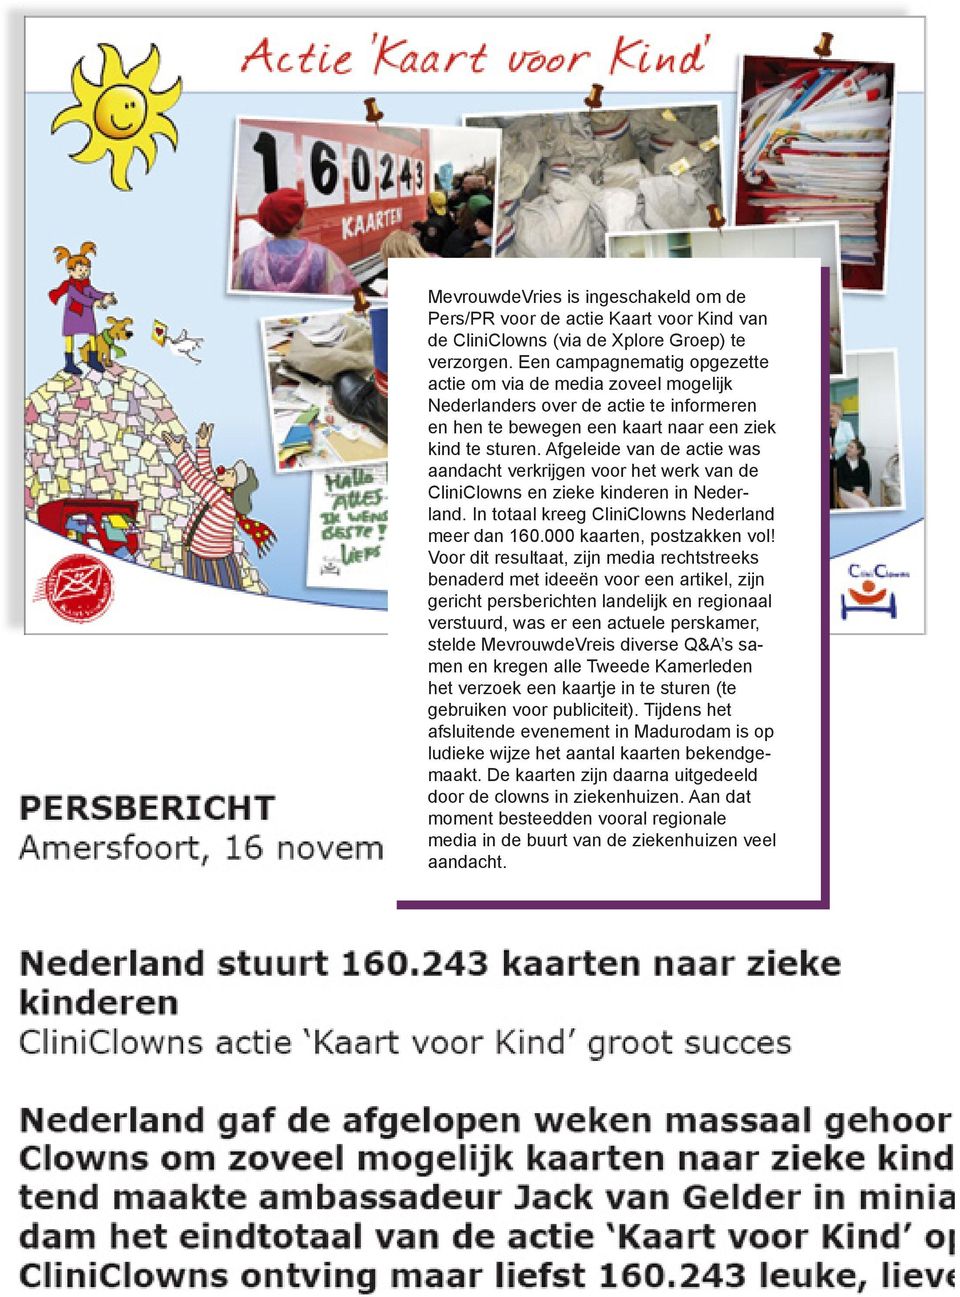 Afgeleide van de actie was aandacht verkrijgen voor het werk van de CliniClowns en zieke kinderen in Nederland. In totaal kreeg CliniClowns Nederland meer dan 160.000 kaarten, postzakken vol!